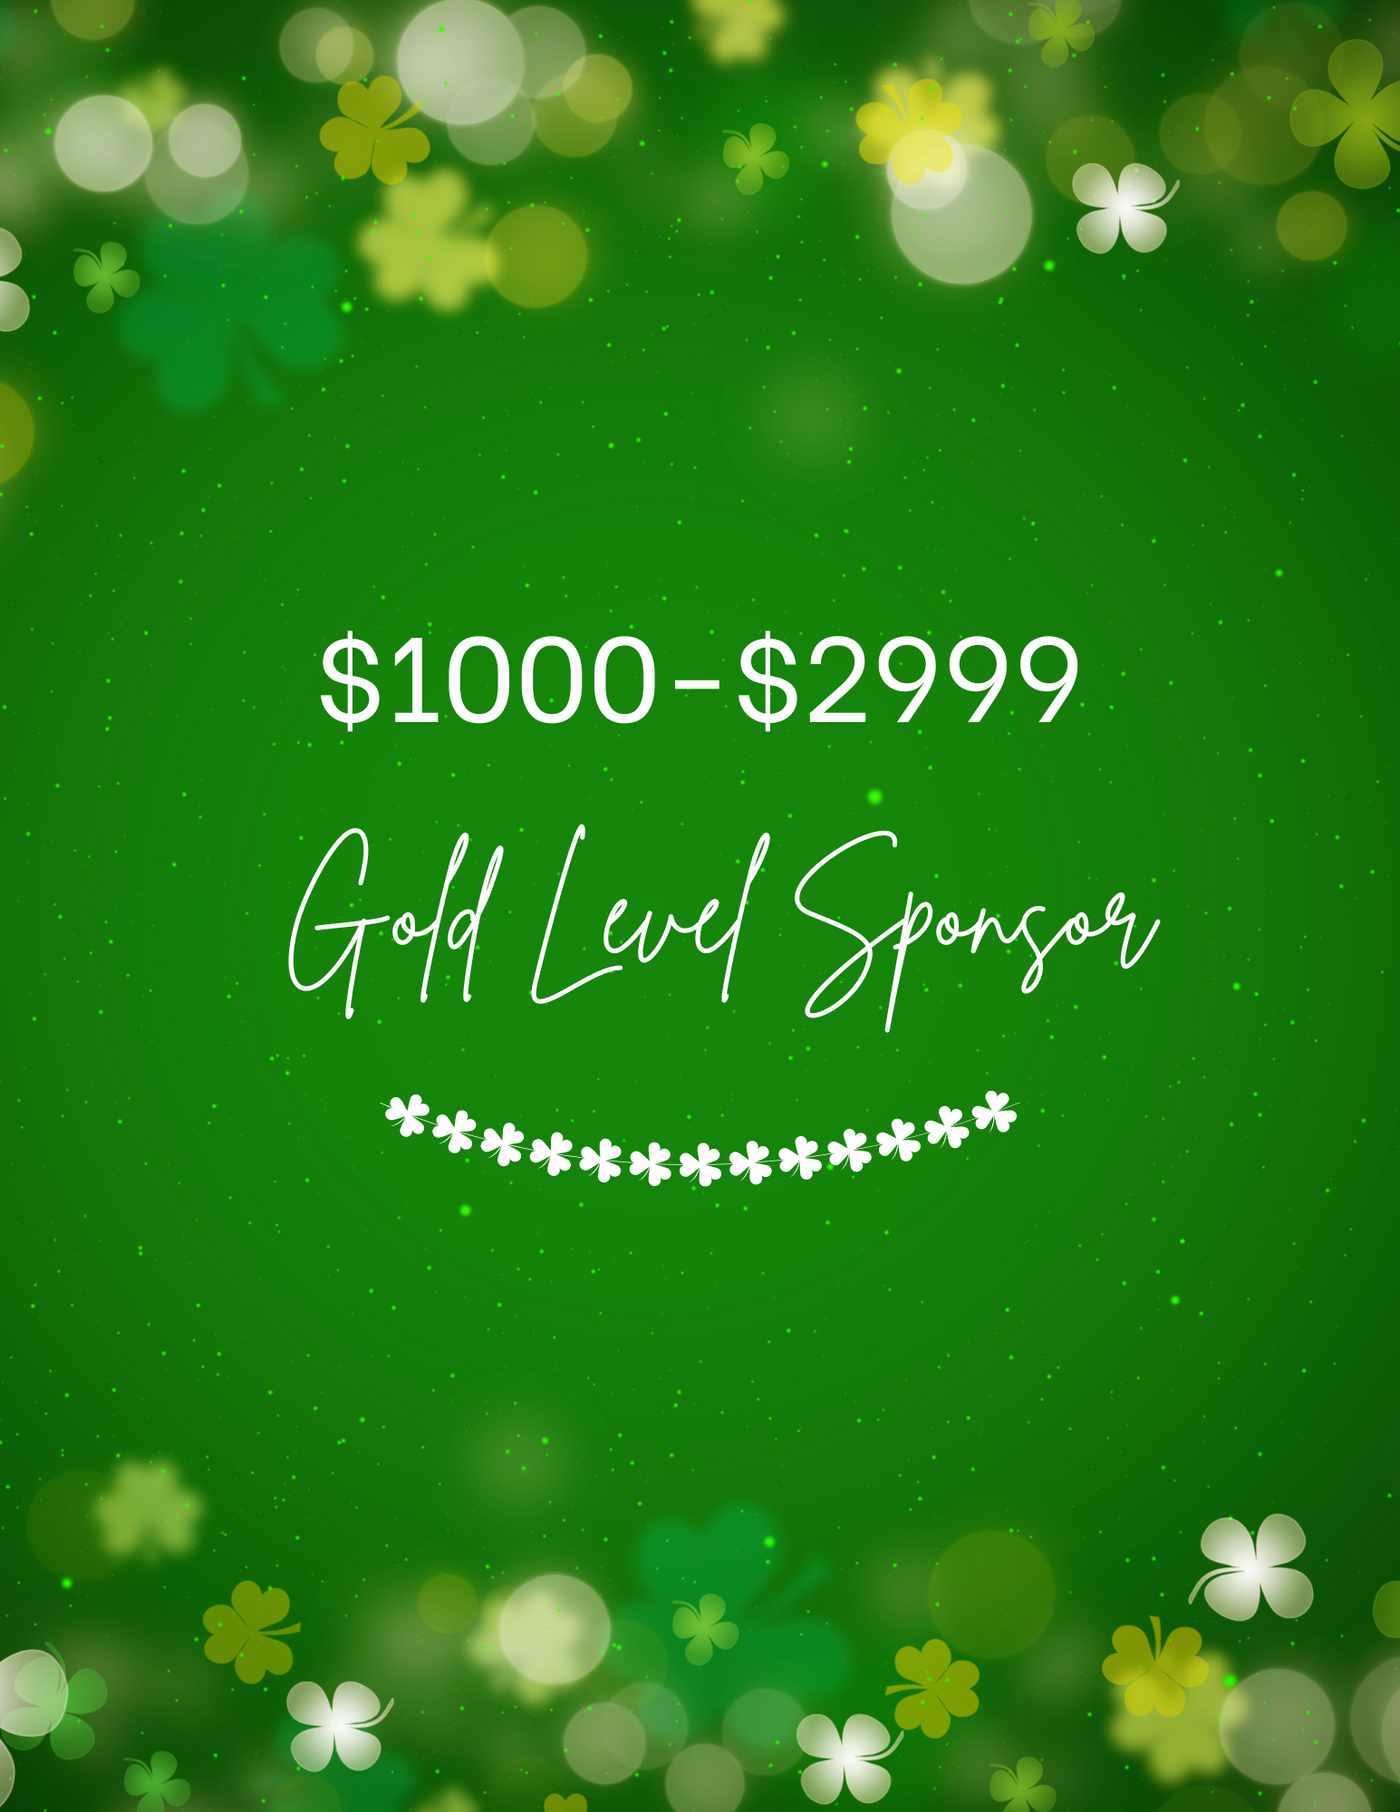 Shamrocks & Shenanigans + Lucky Shamrock Gold Sponsor $1,000. - $2,999.